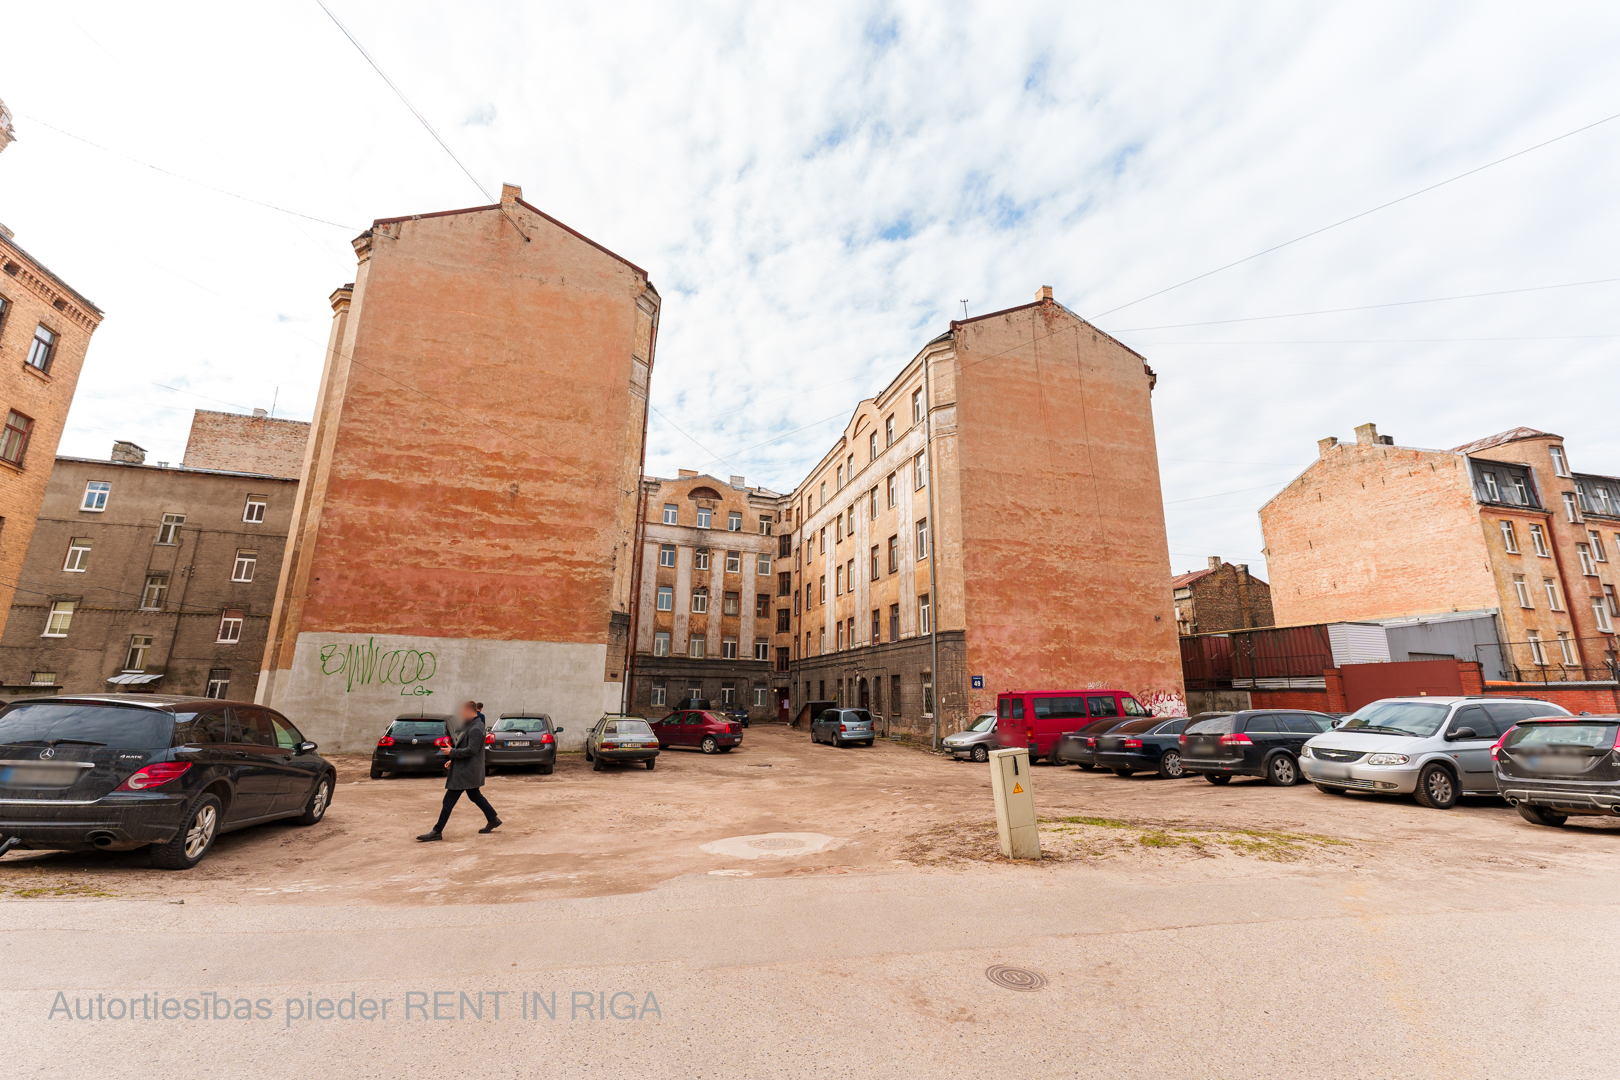 Продают квартиру, улица Daugavpils 49 - Изображение 1